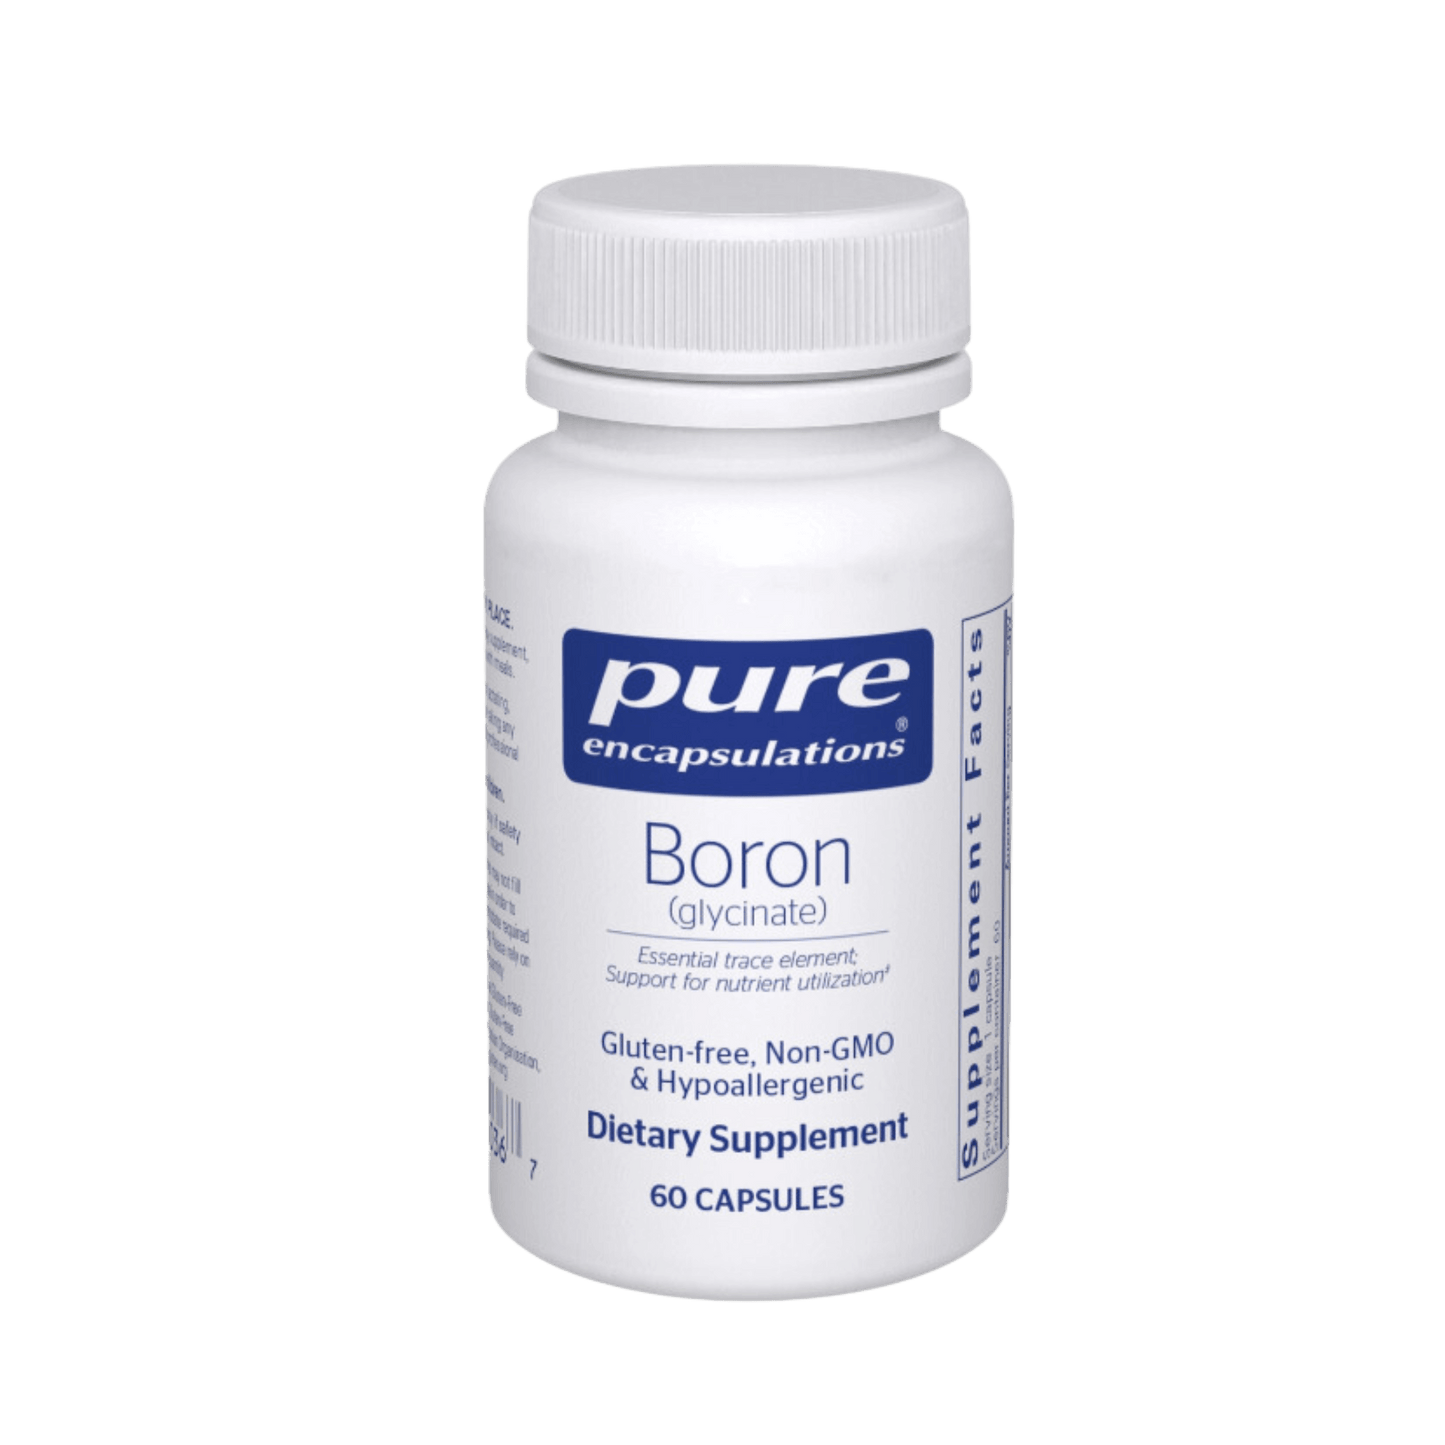 Pure Encapsulations Boron Glycinate Capsules